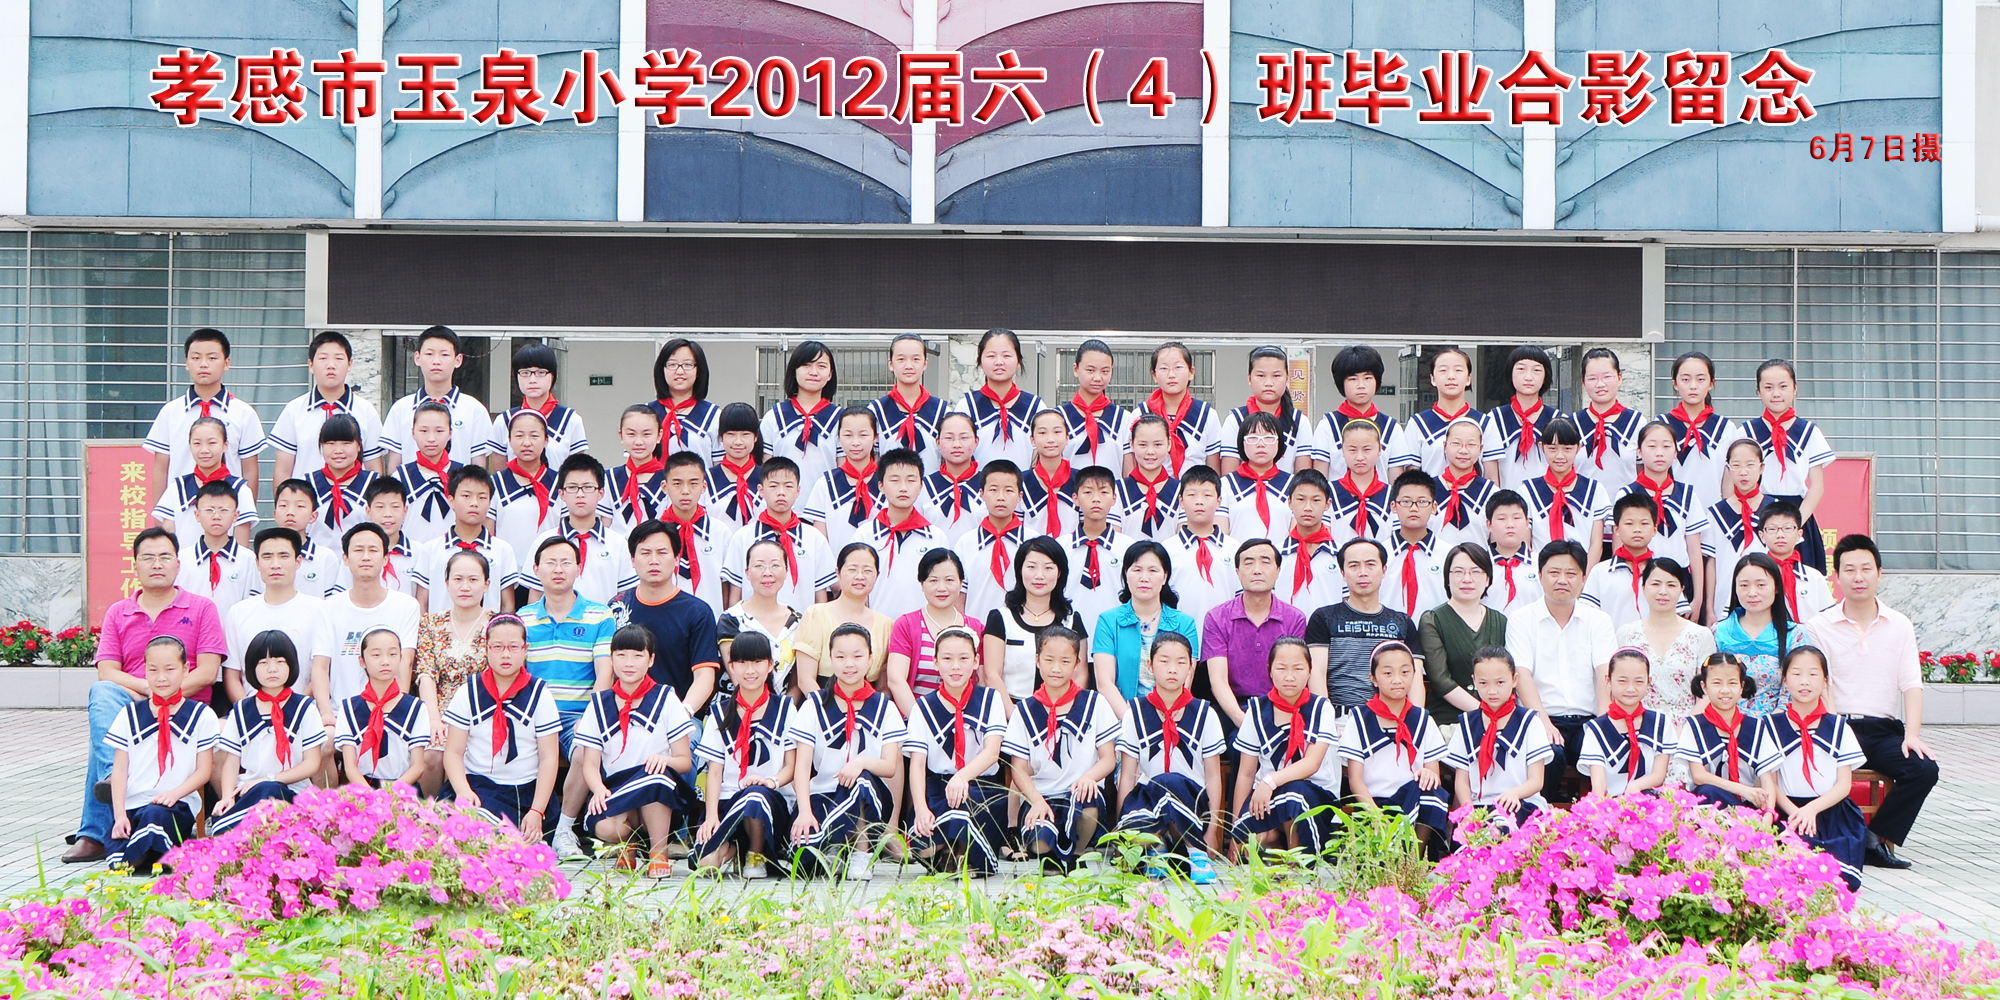 2012年玉泉小学六年级学生毕业照